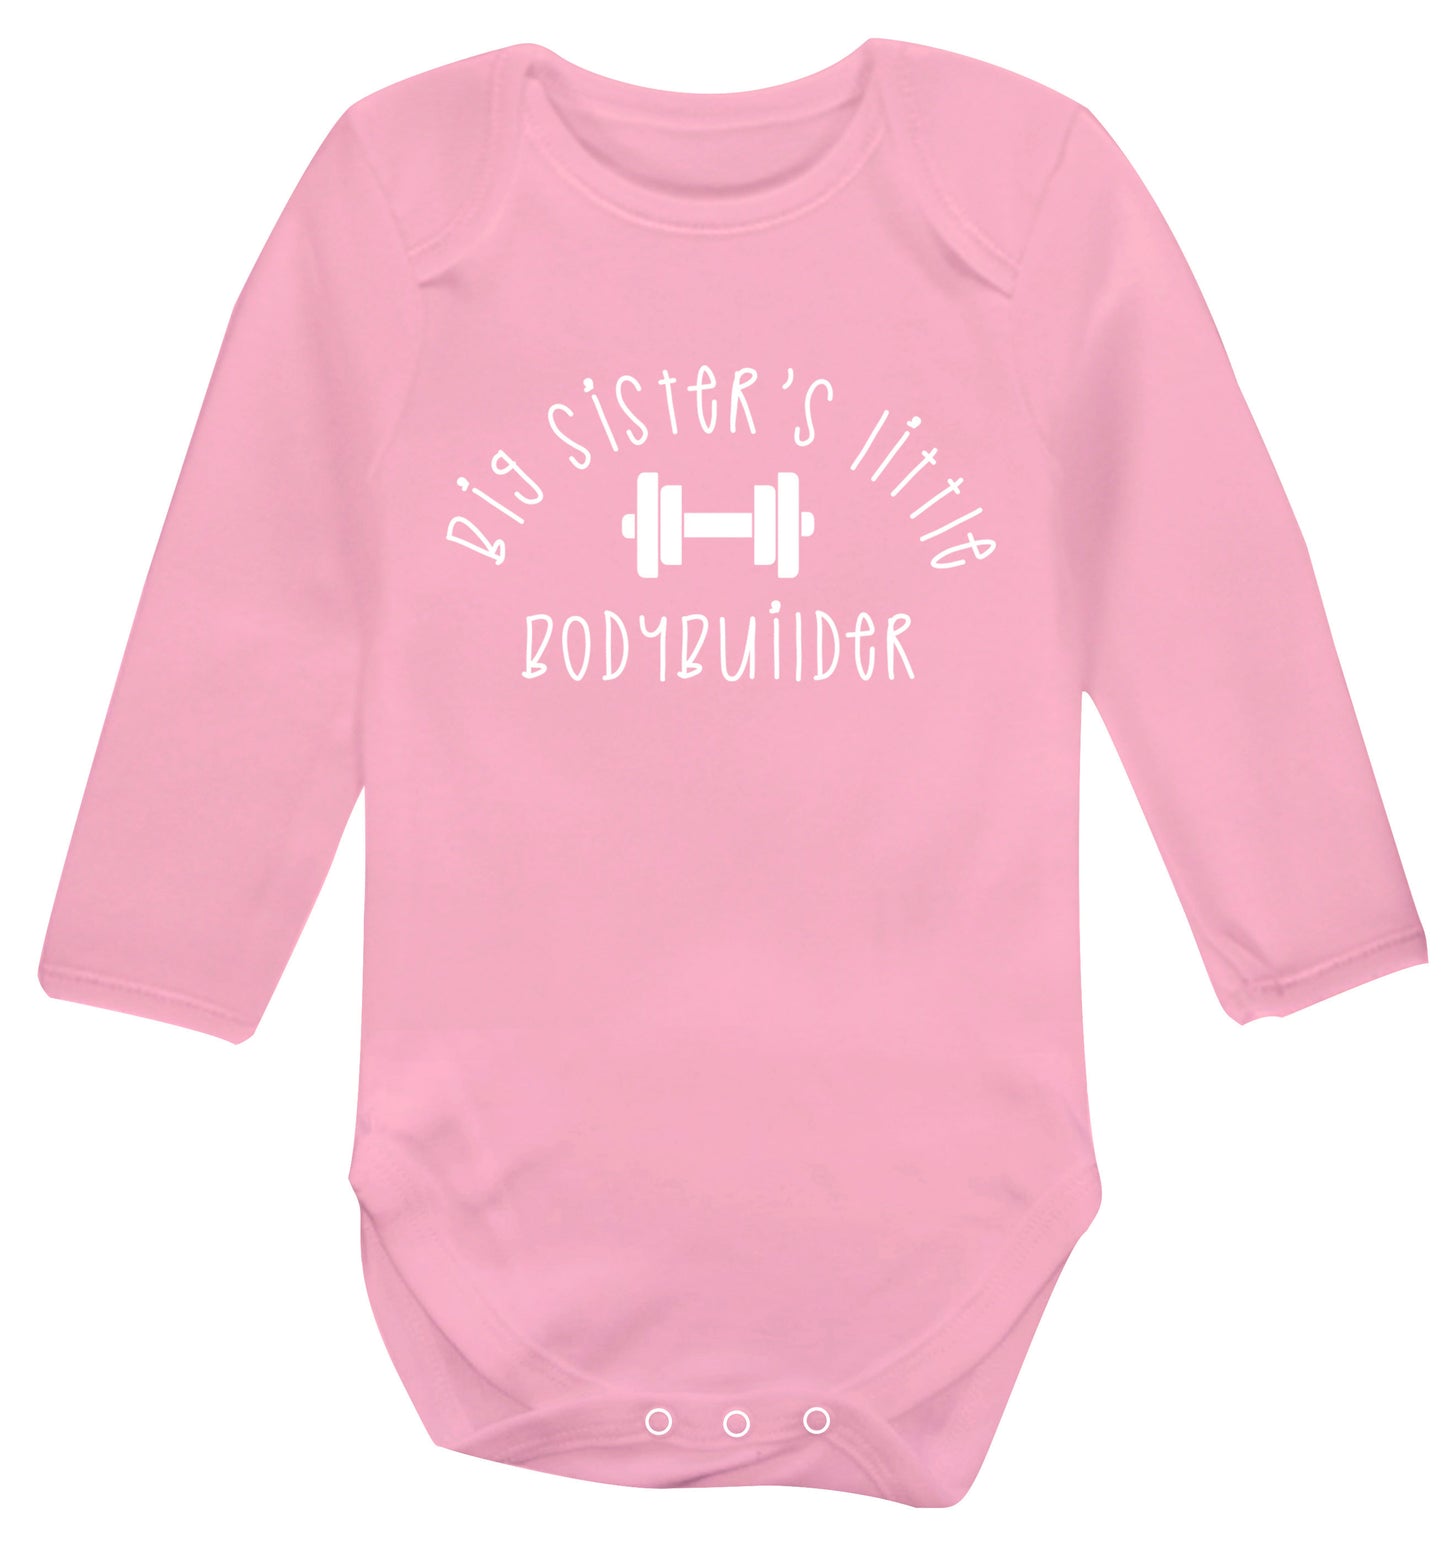 Big sister's little bodybuilder Baby Vest long sleeved pale pink 6-12 months